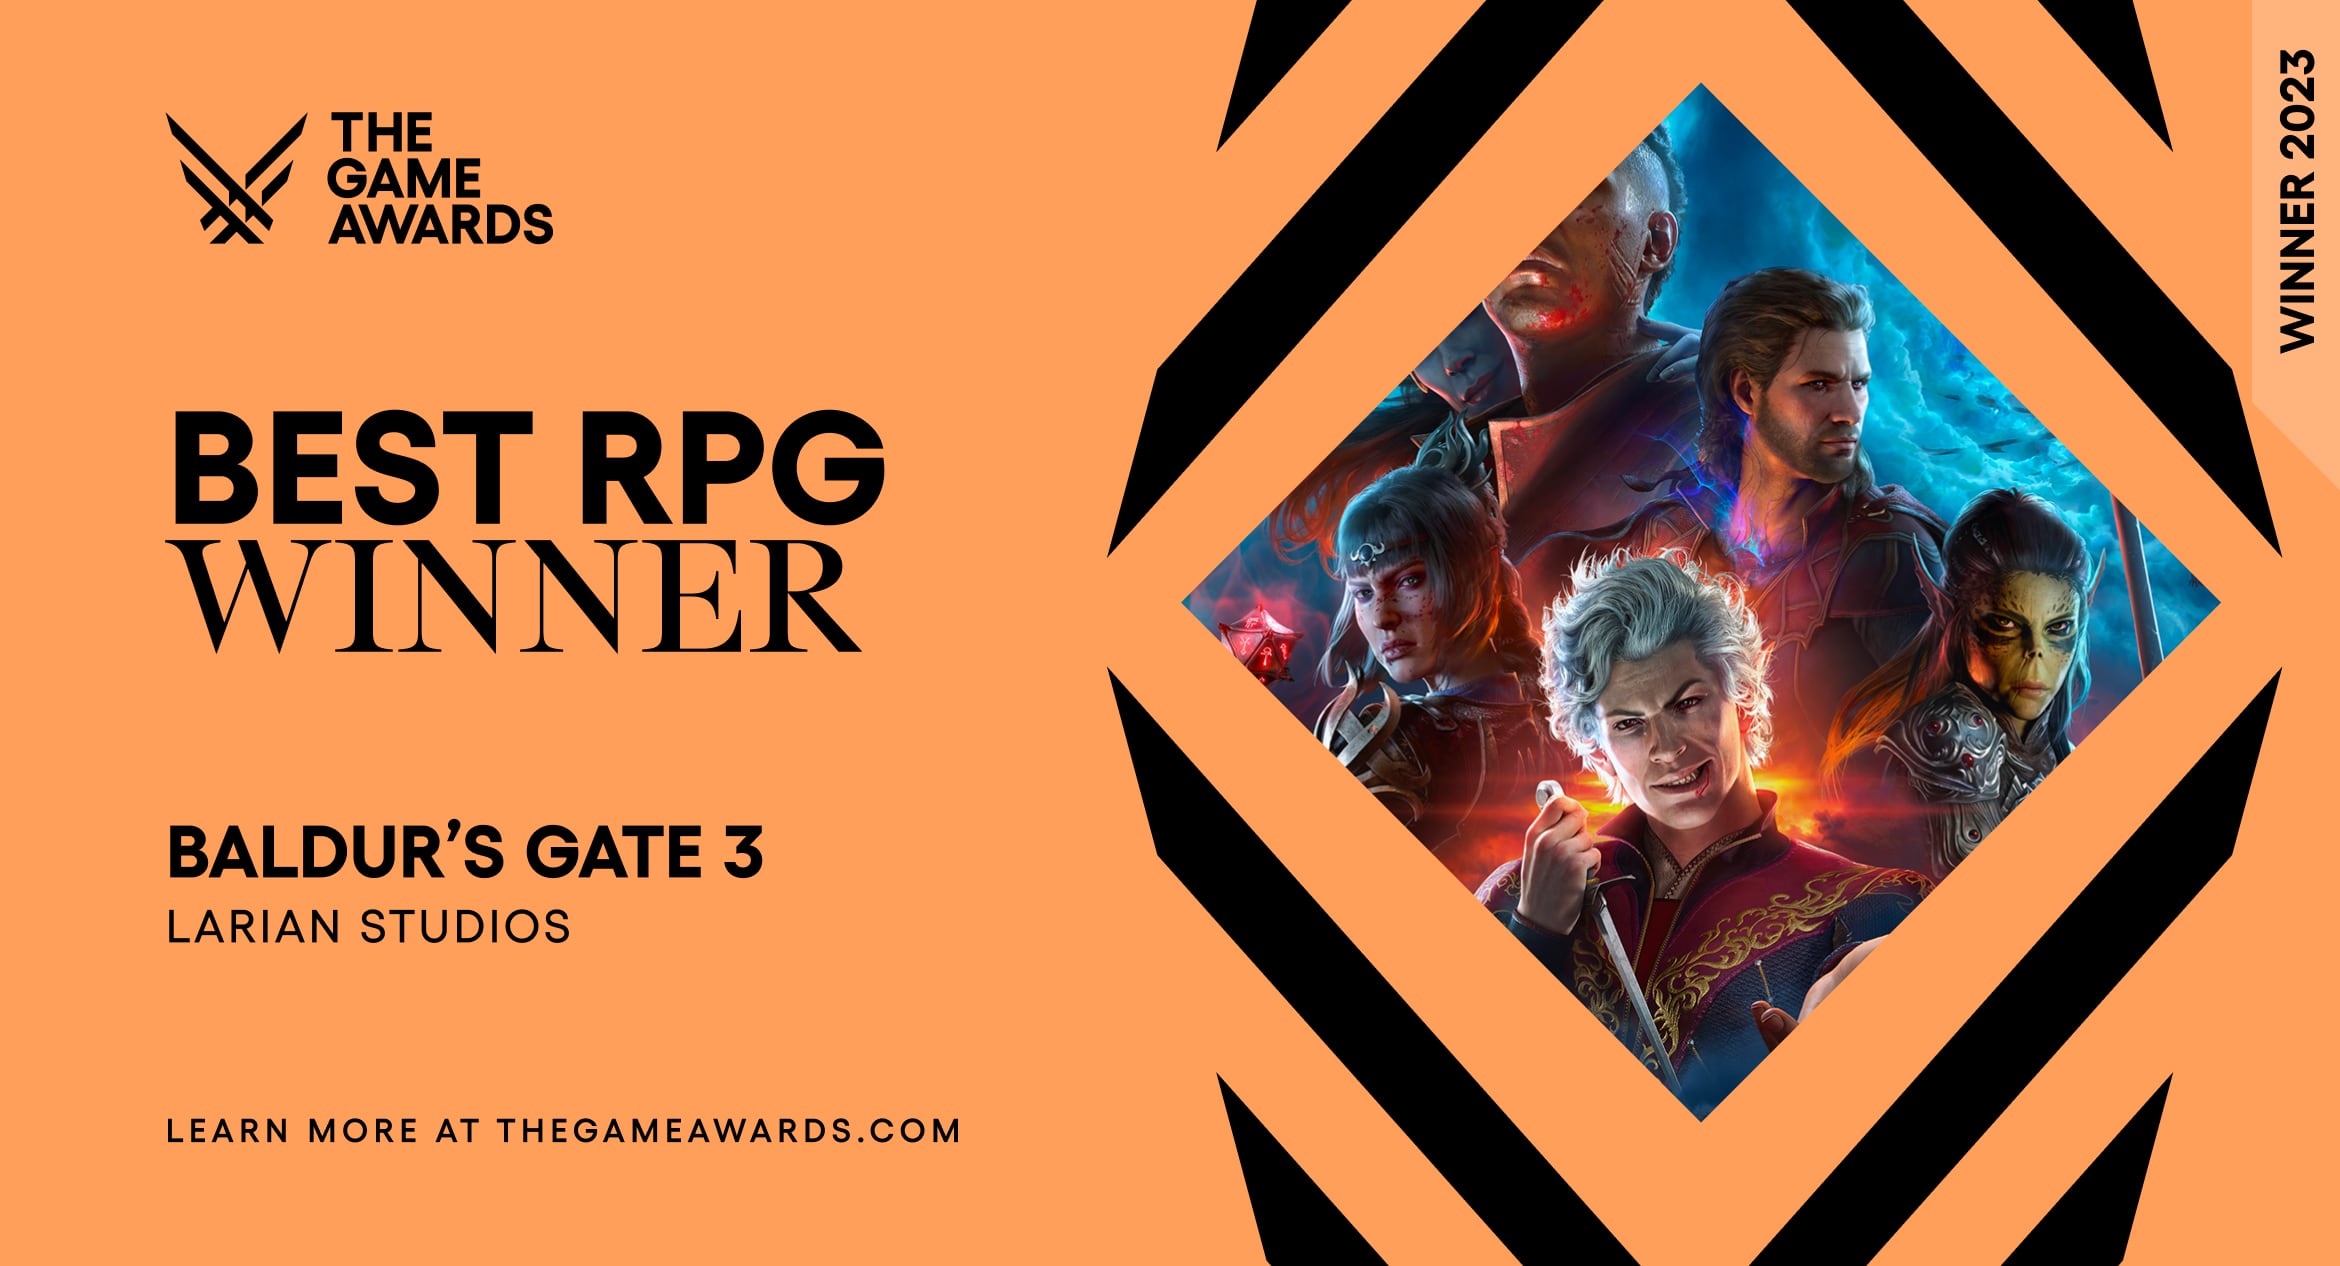 Best RPG, Nominees